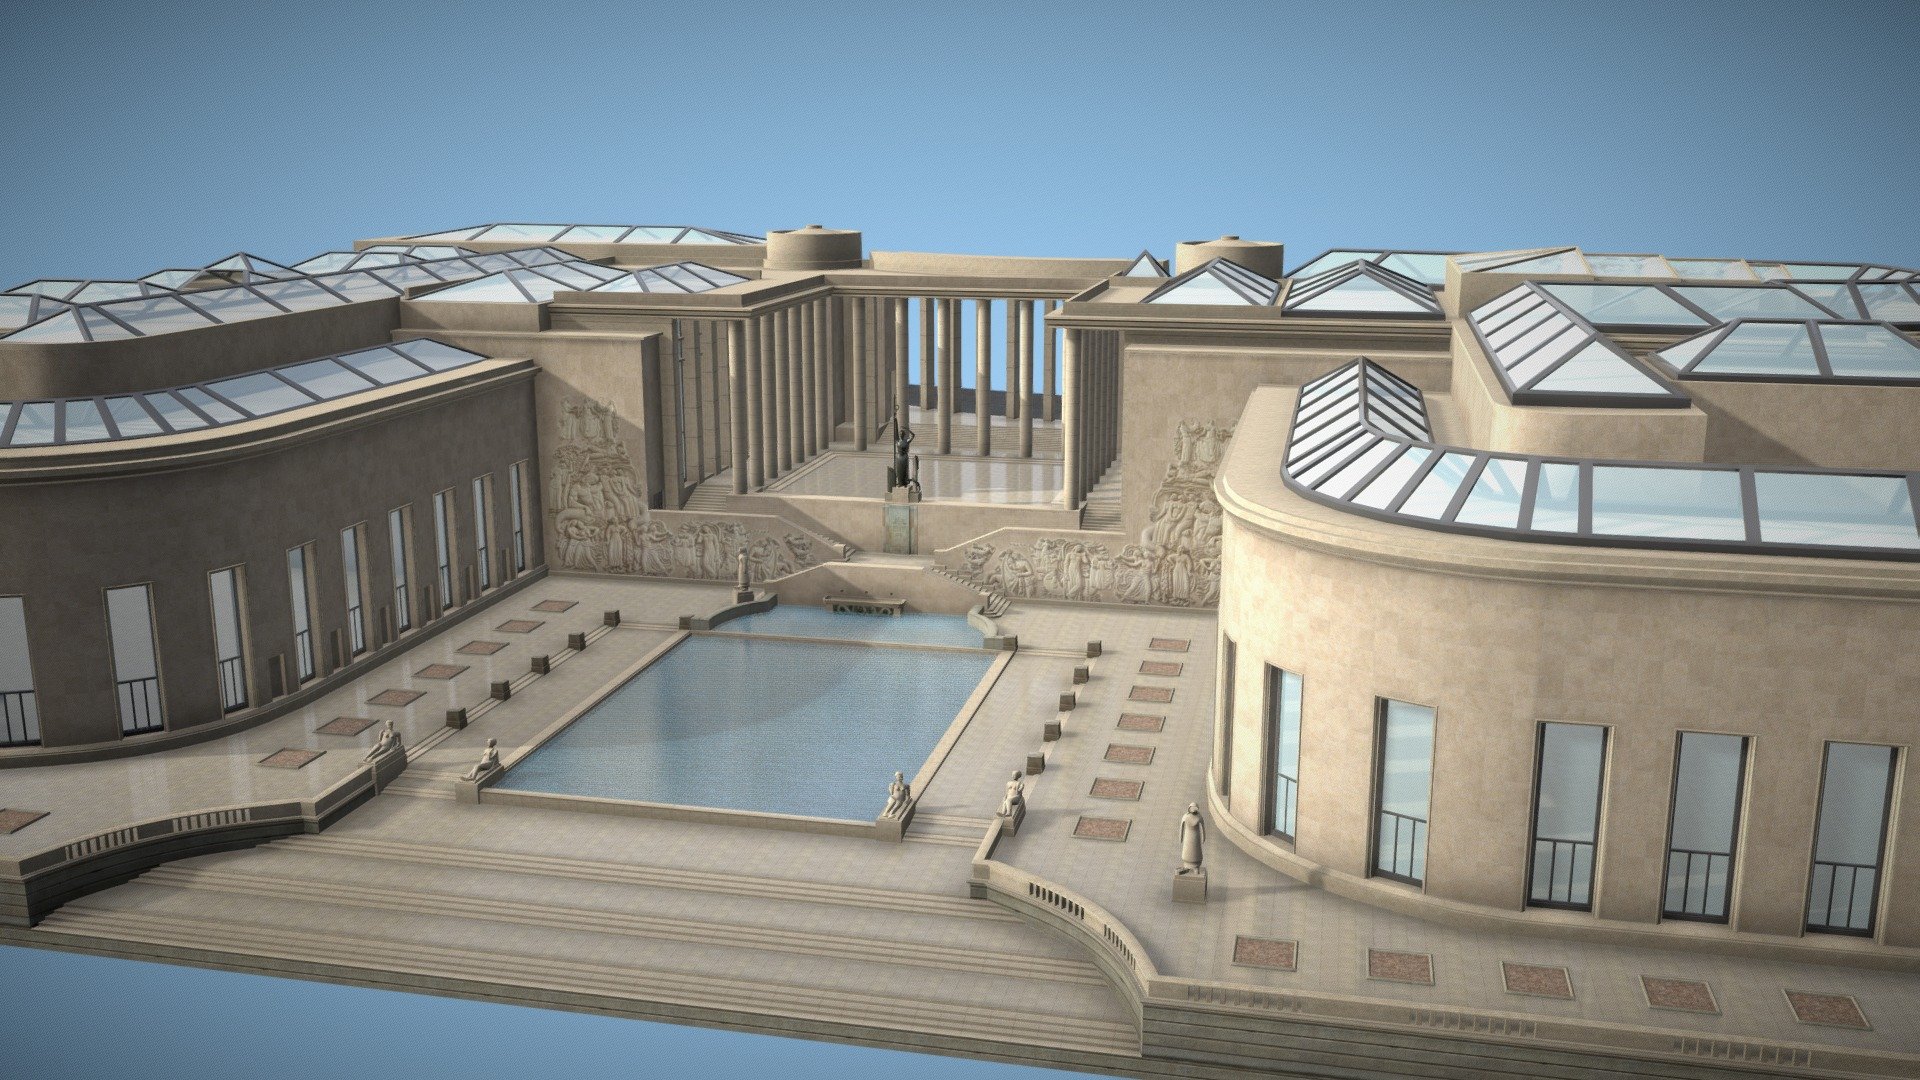 Palais de Tokyo, Musée d'art moderne de Paris, Dome - Palais de Tokyo - 3D model by Romain Foliot (@romainfoliot) 3d model